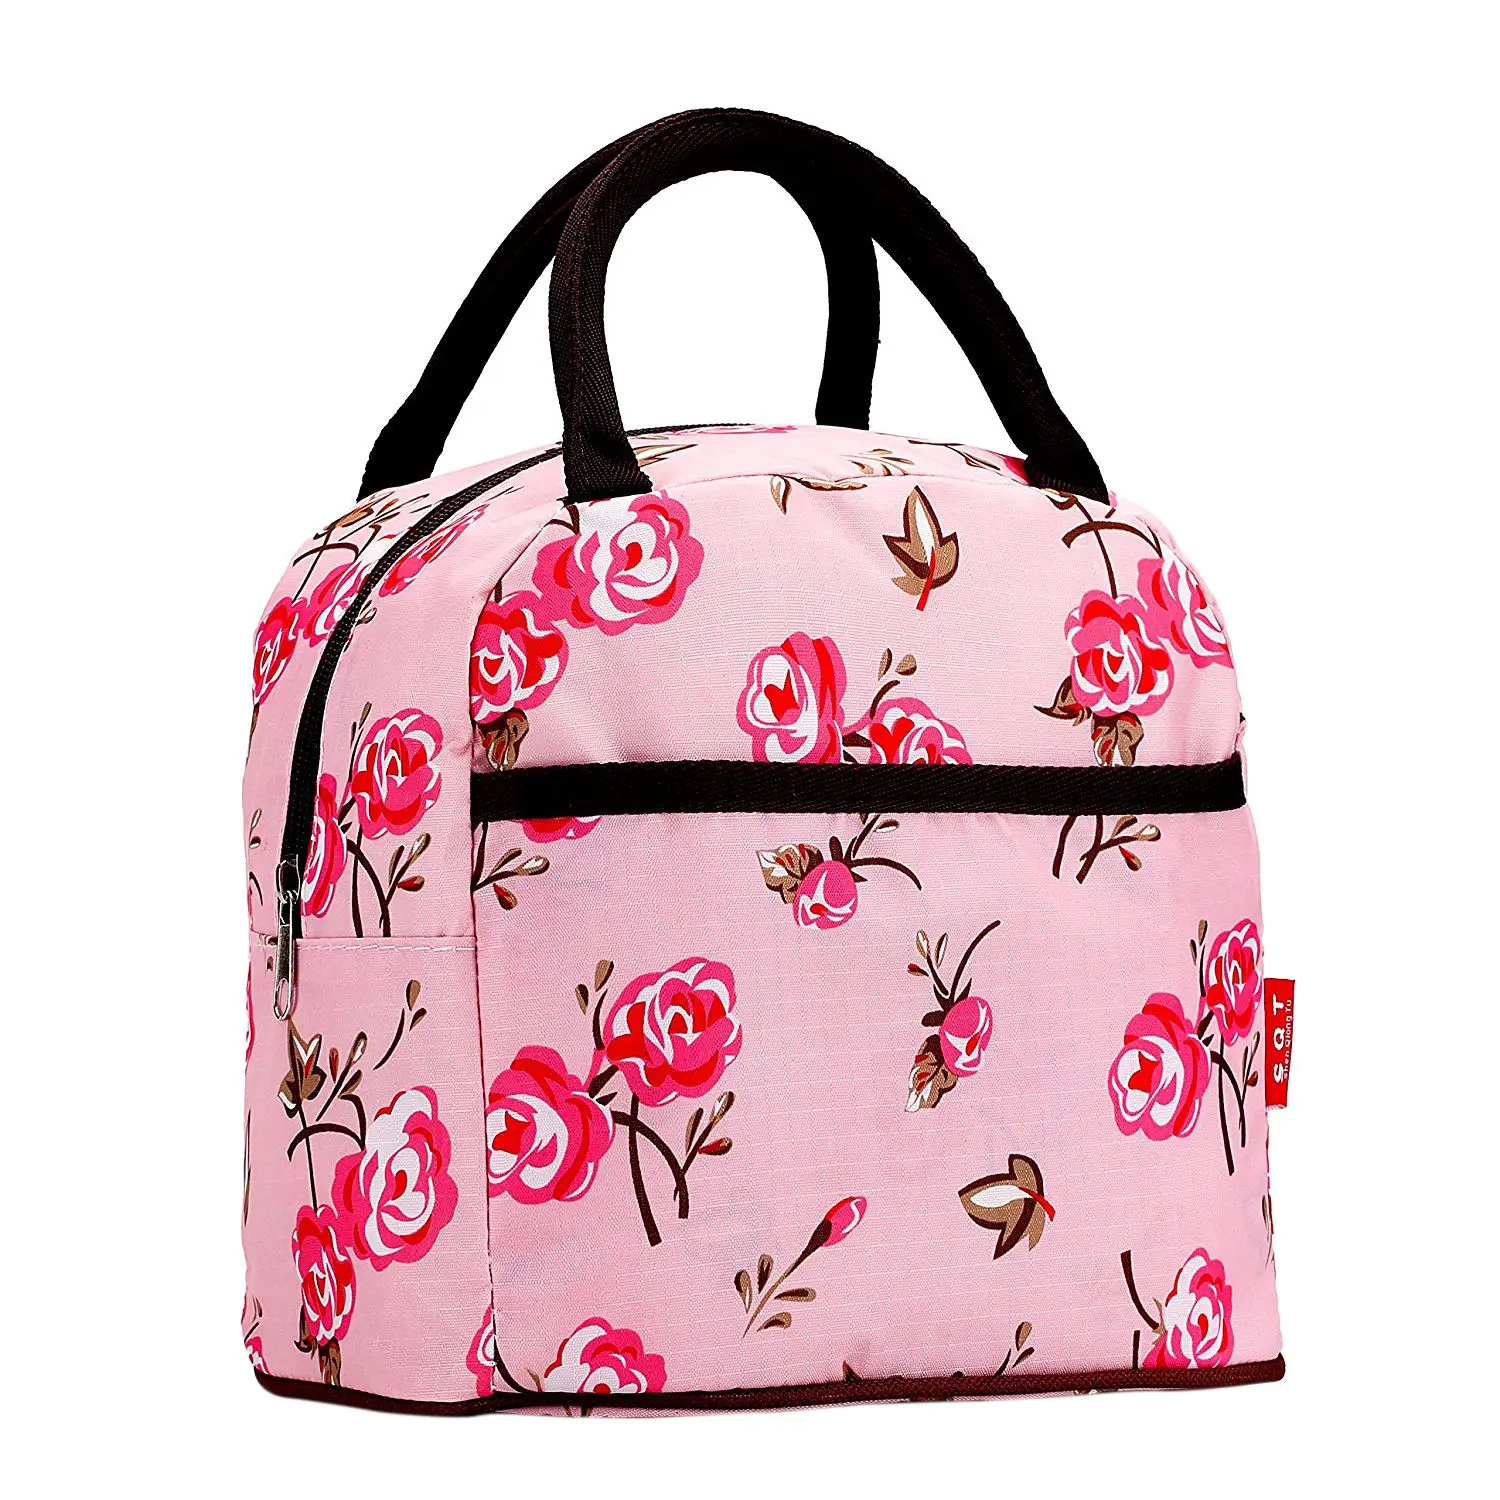 ABDB розовый стиль полиэстер Ланч-бокс посылка магазин сумка кошелек для женщин девушек - Цвет: Pink